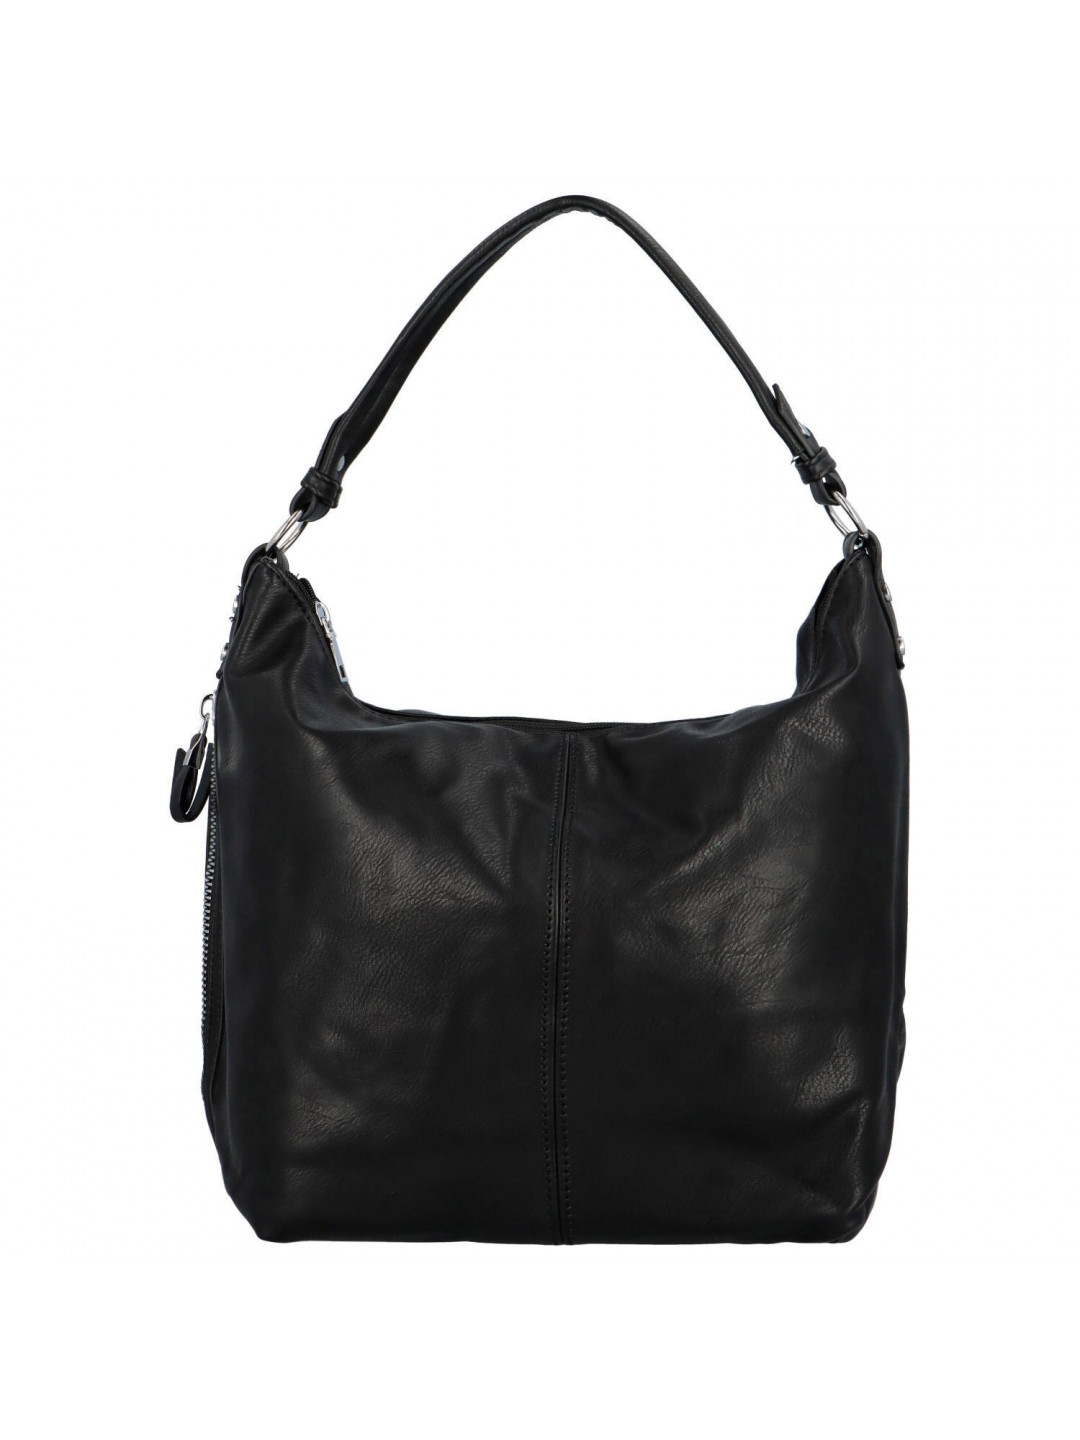 Dámská kabelka na rameno černá – Romina & Co Bags Elianora